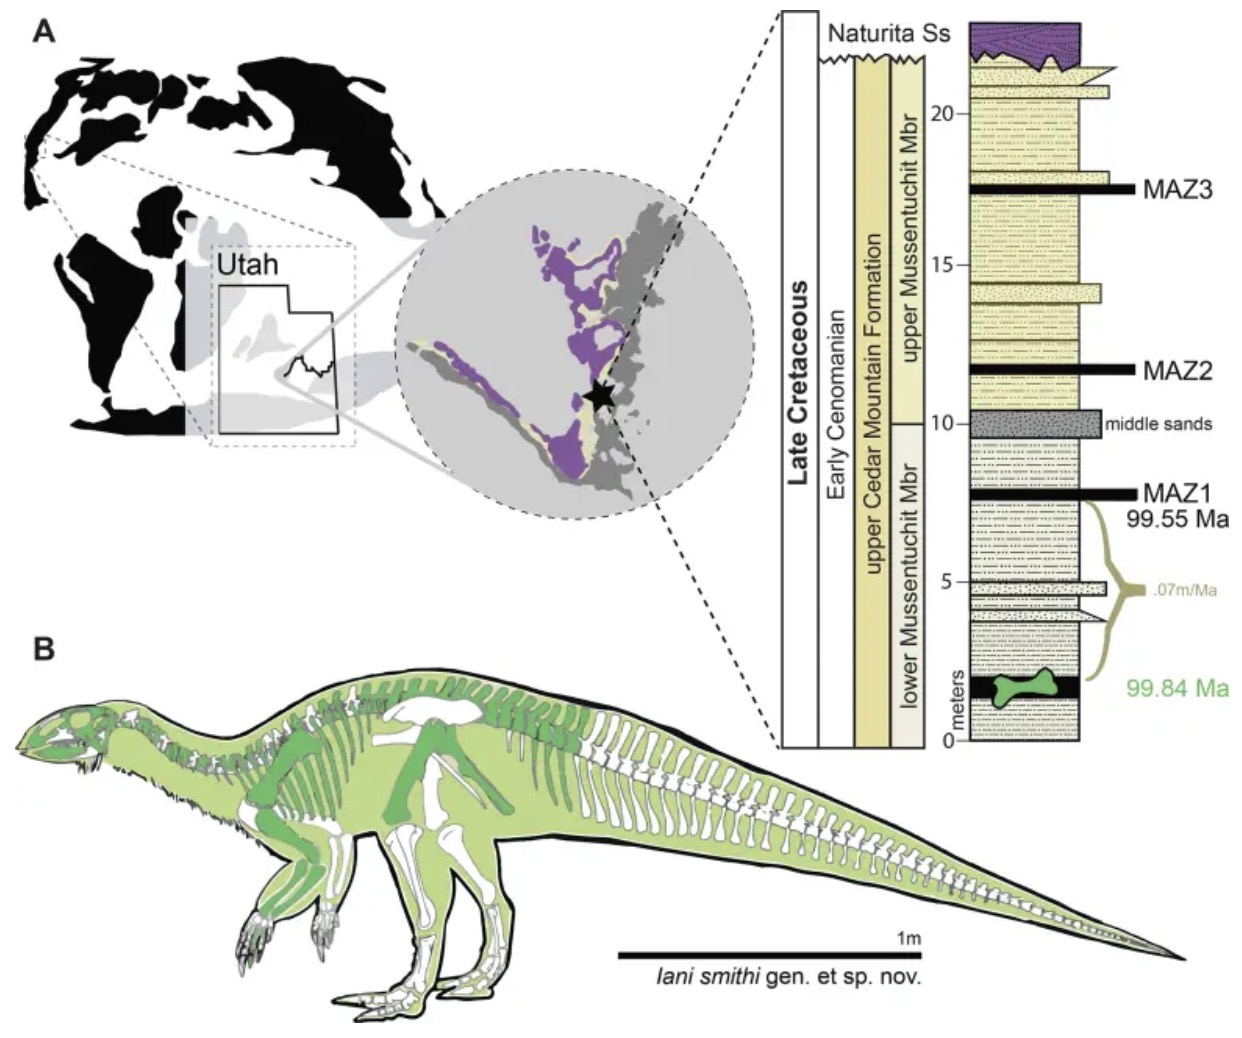 Hình ảnh phác hoạ loài khủng long mới cùng nơi phát hiện ra nó. Ảnh: PLOS ONE